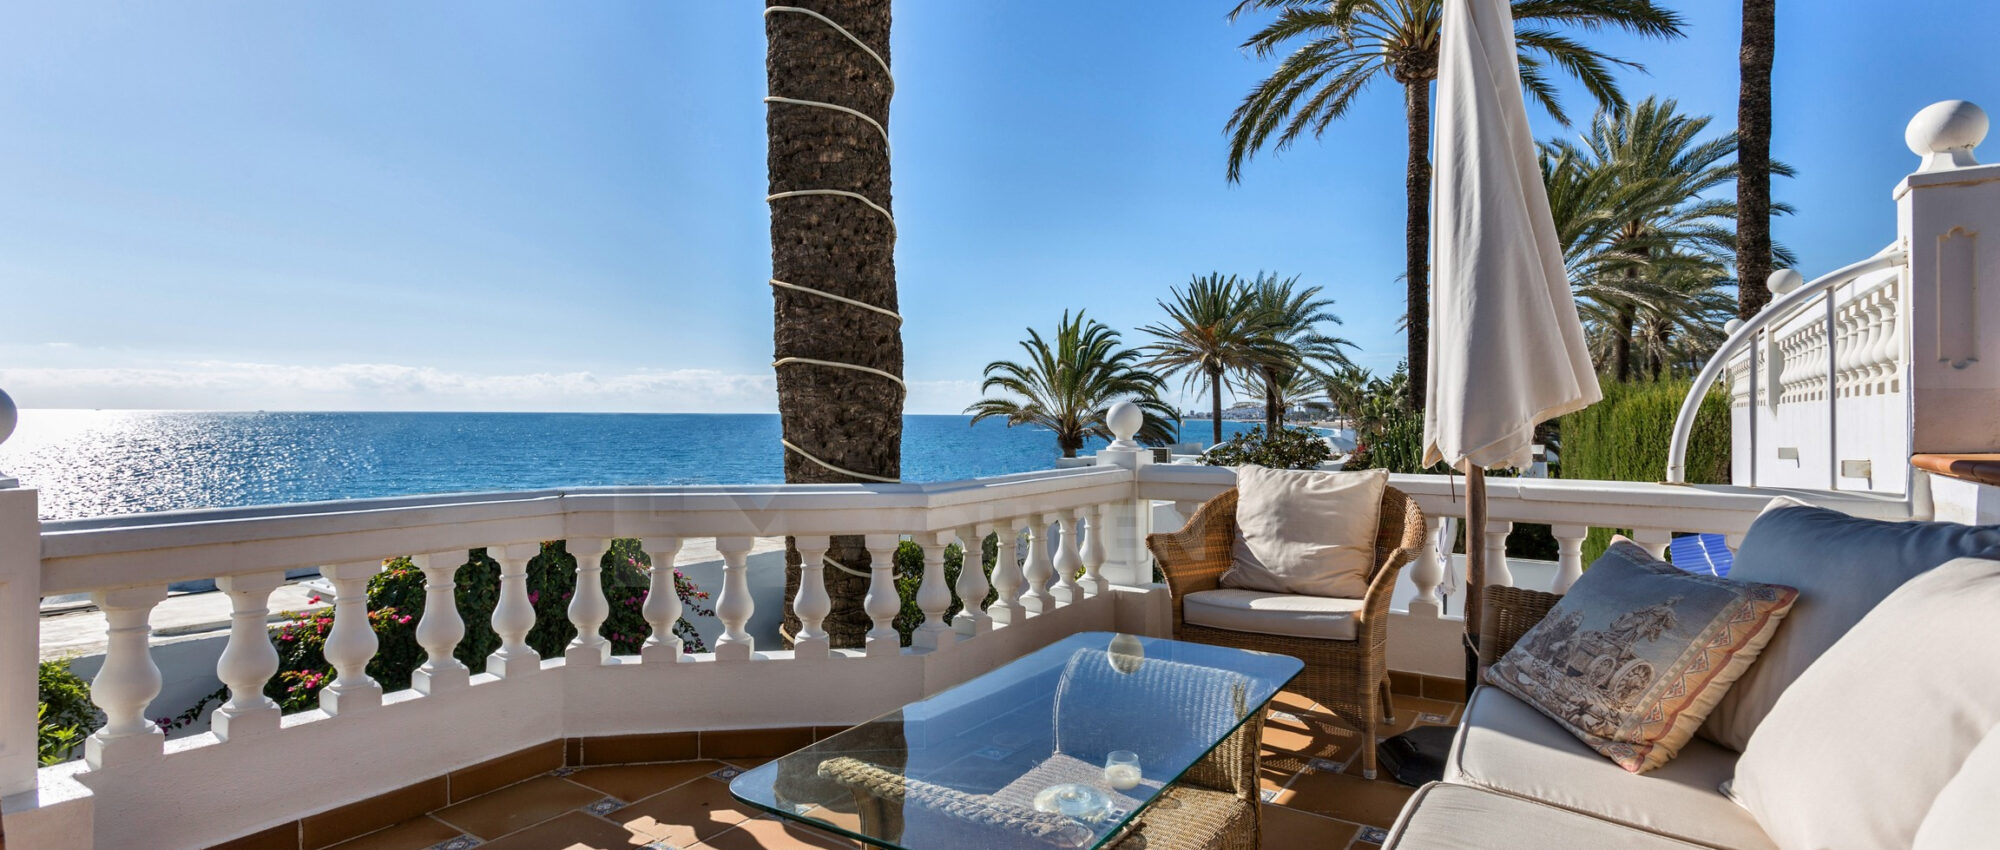 Adosado en Primera Línea de Playa en Marbella con Impresionantes Vistas al Mar